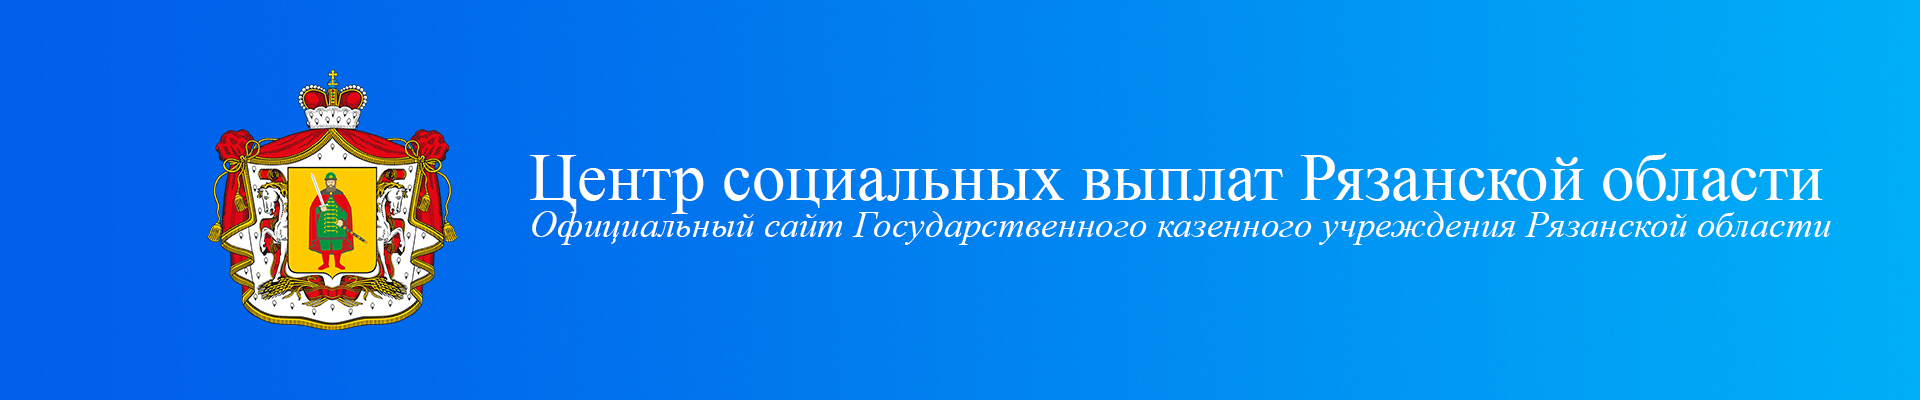 Центр социальных выплат Рязанской области